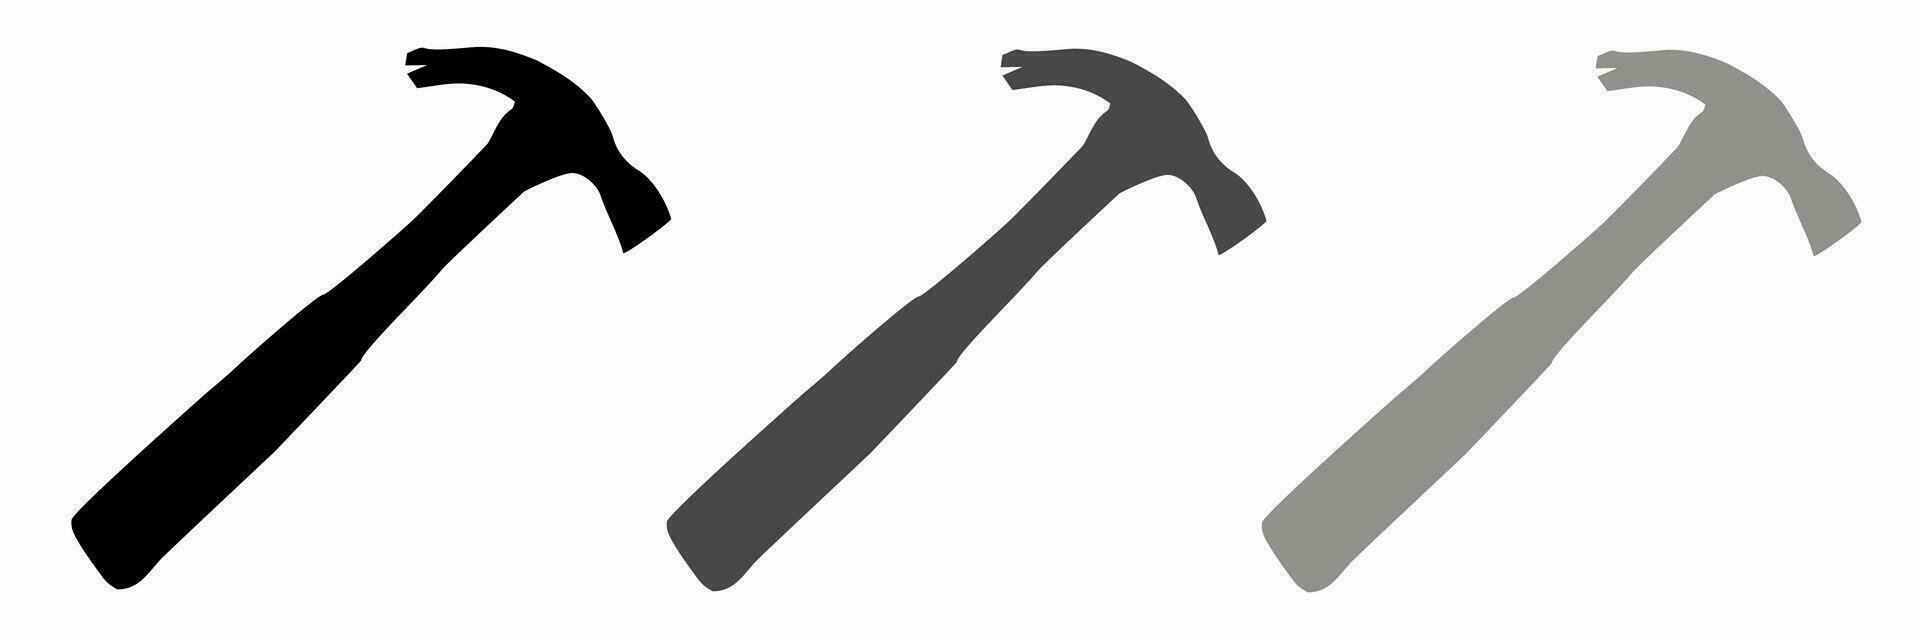 Hammer Symbol schwarz Weiß Illustration Sammlung. vektor